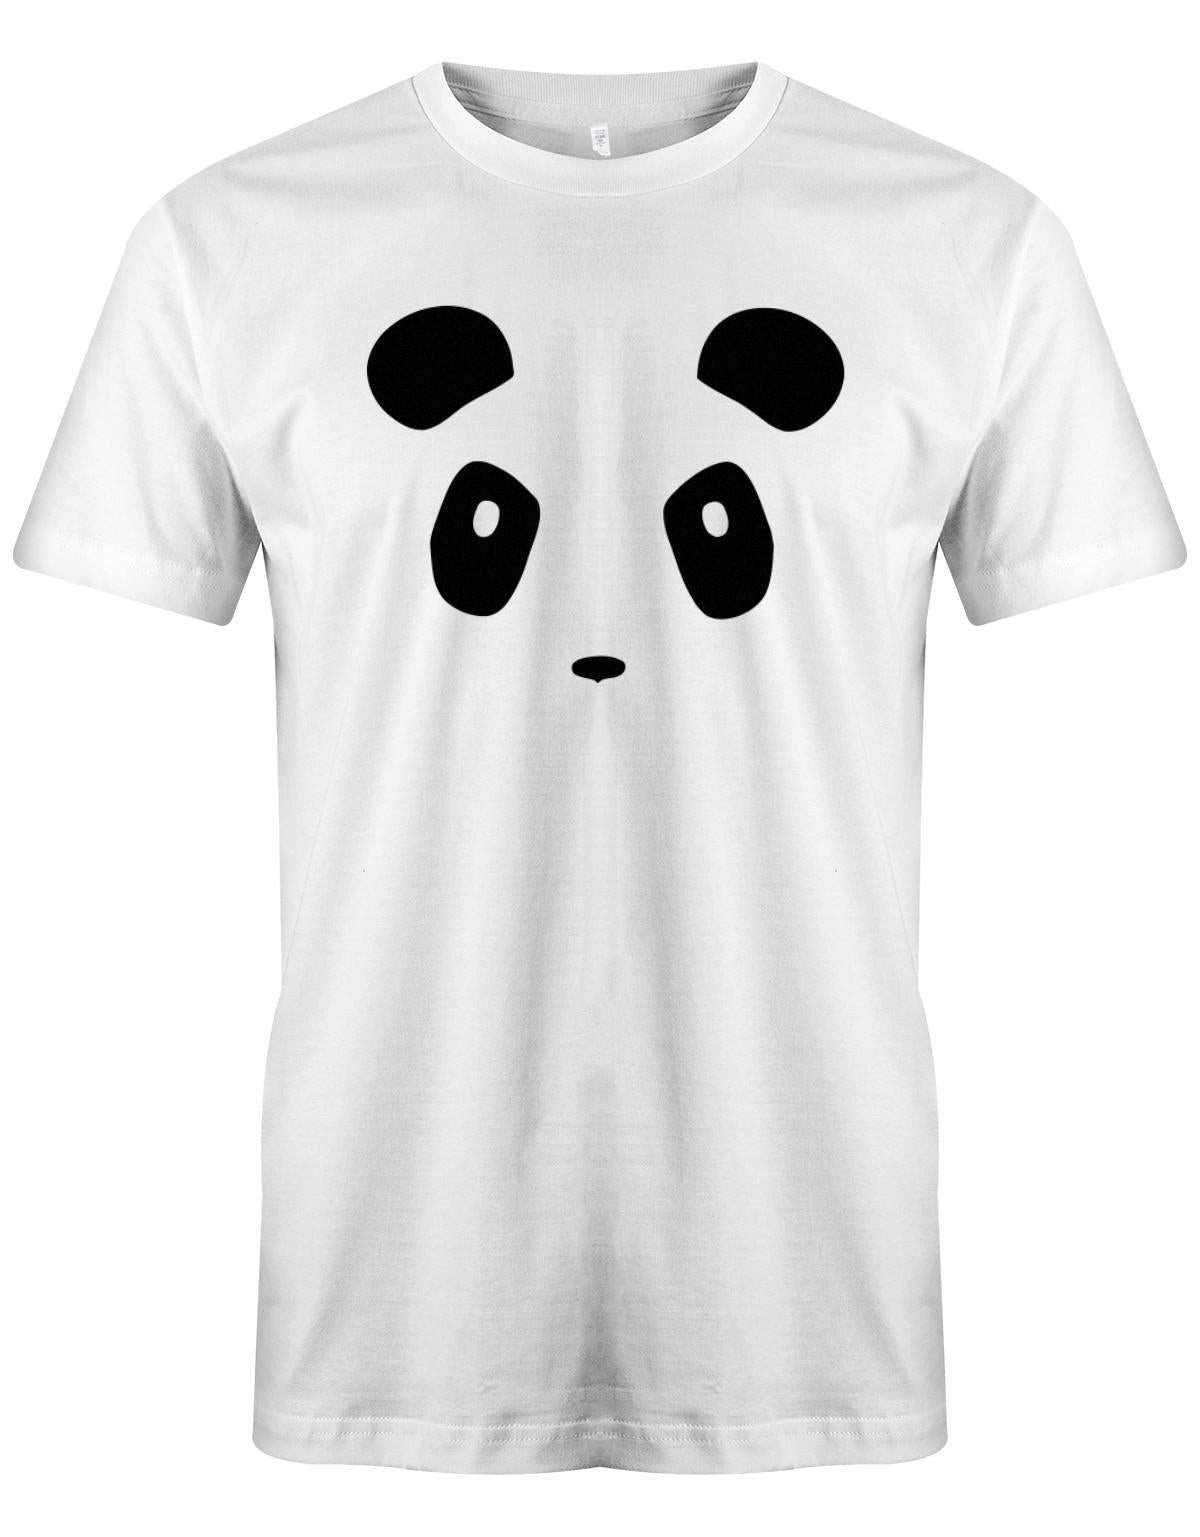 Pandab-r-Kost-m-herren-shirt-weiss